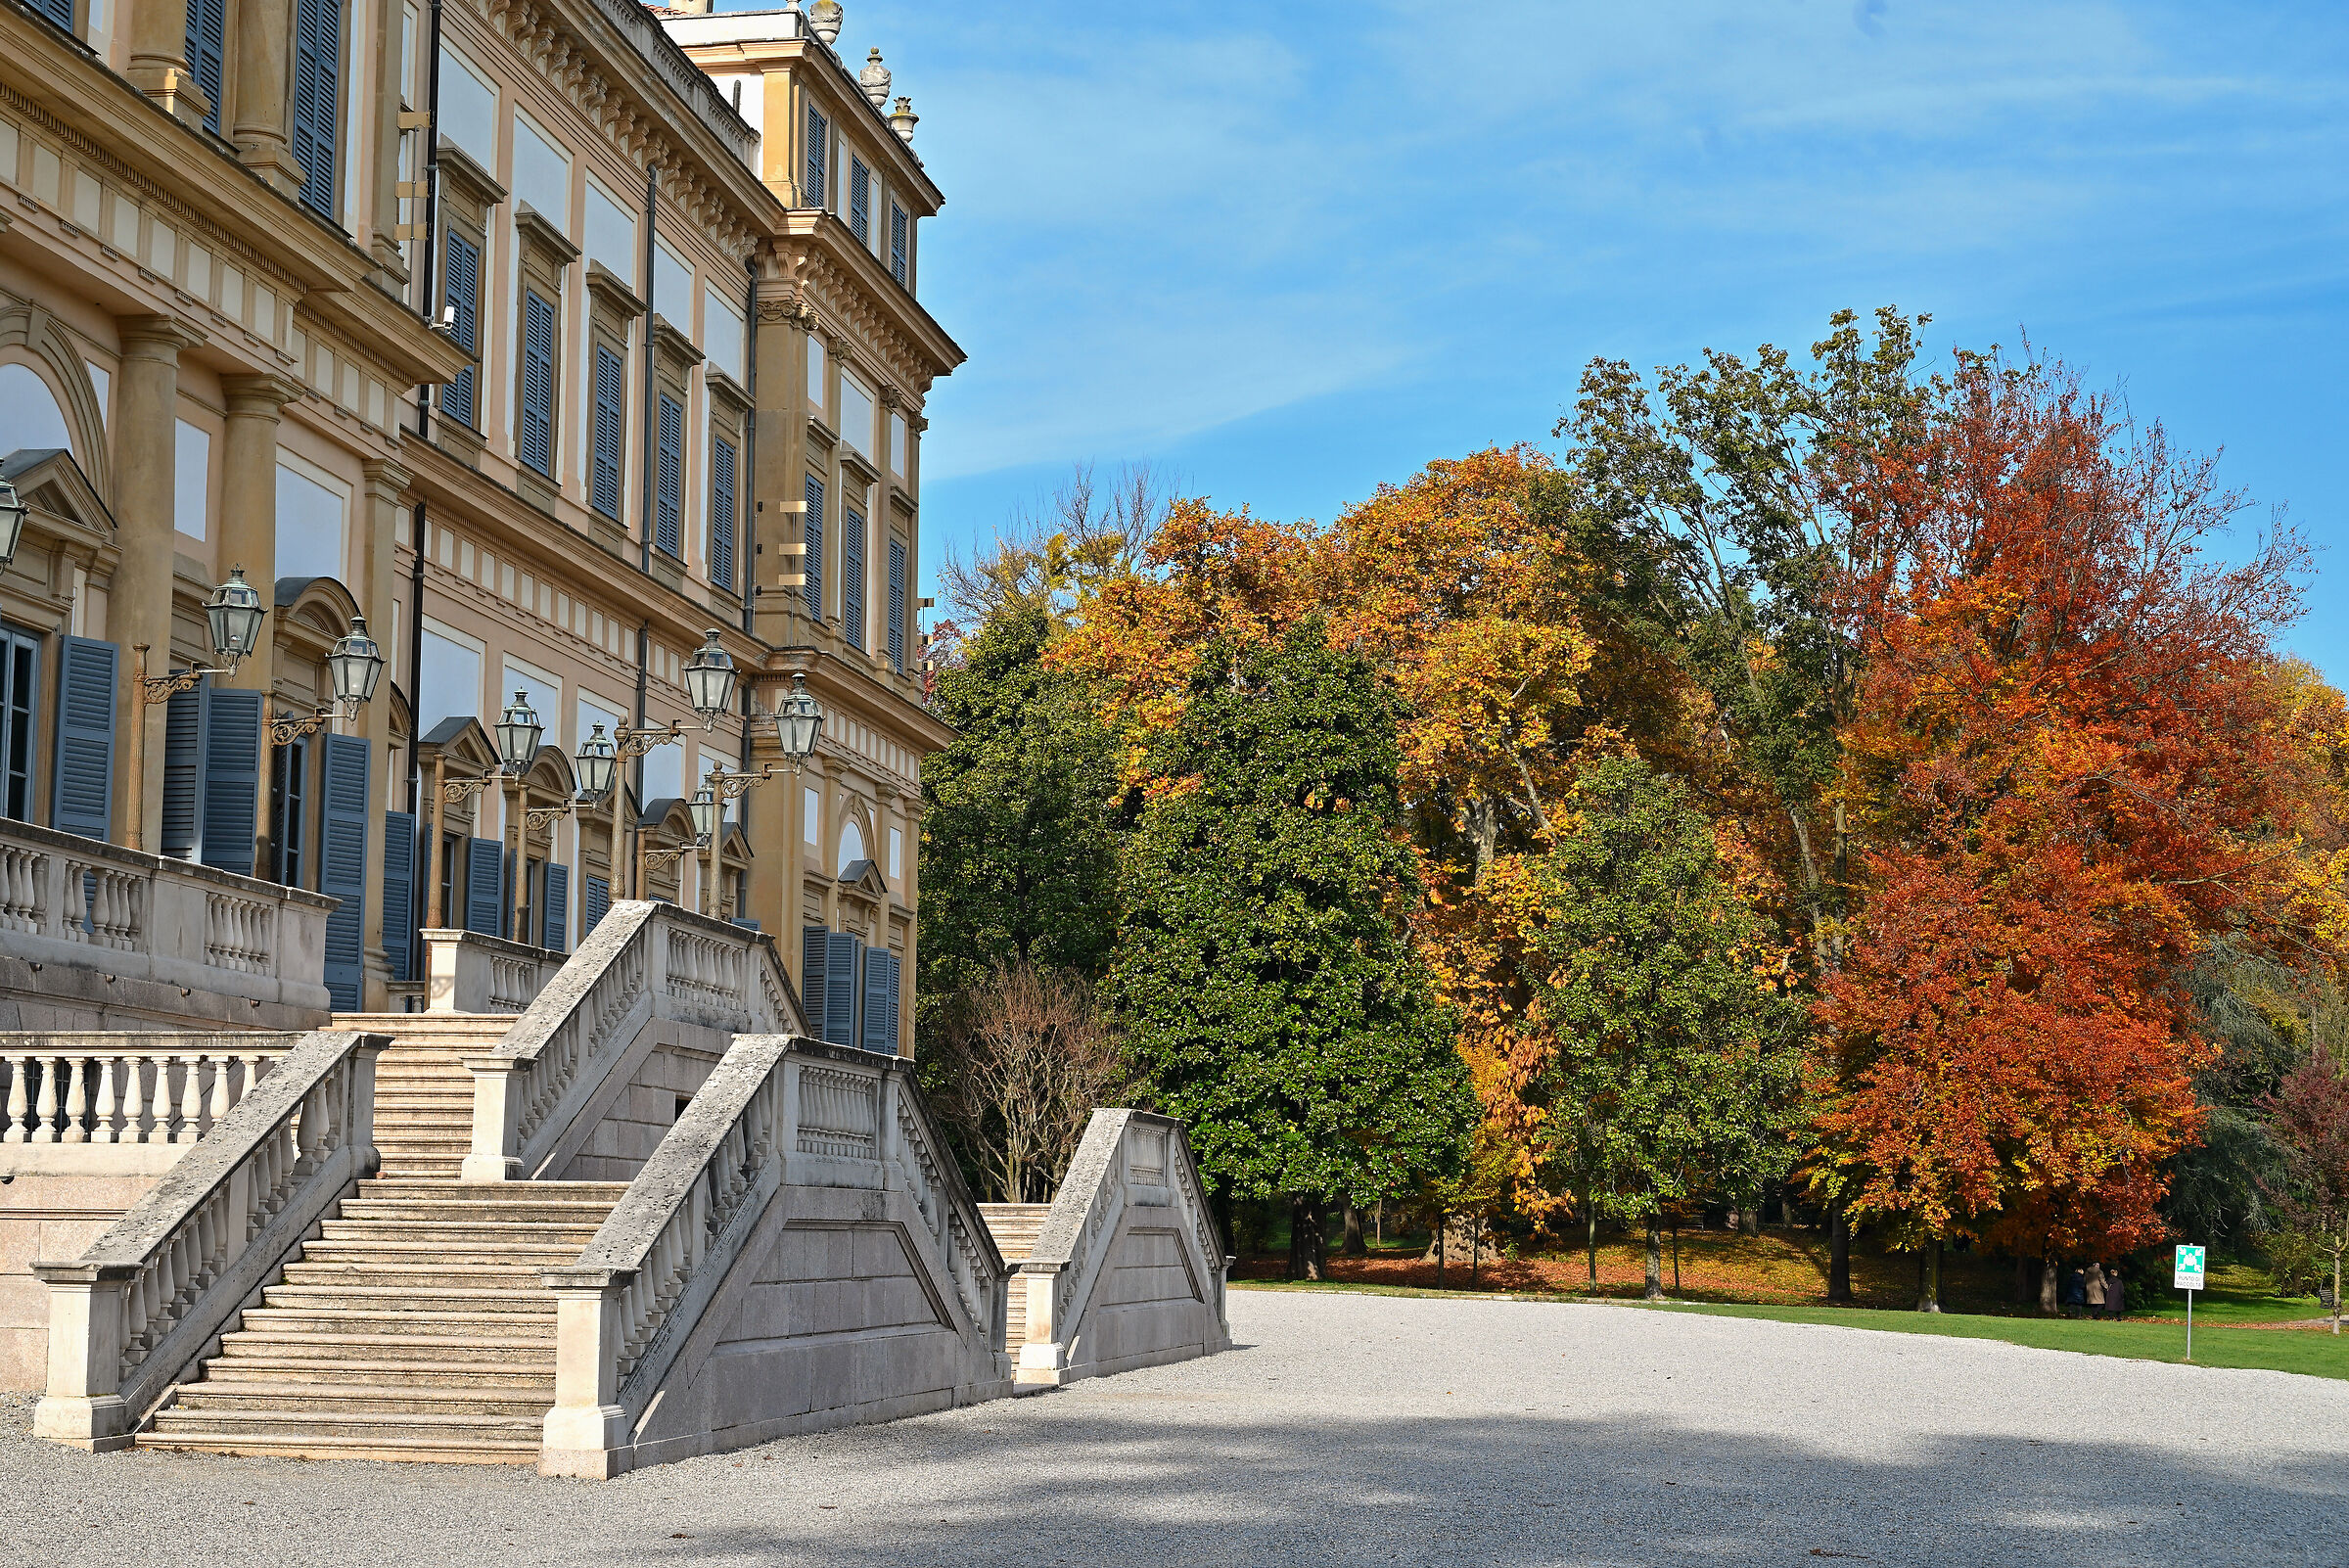 Royal Palace of Monza...